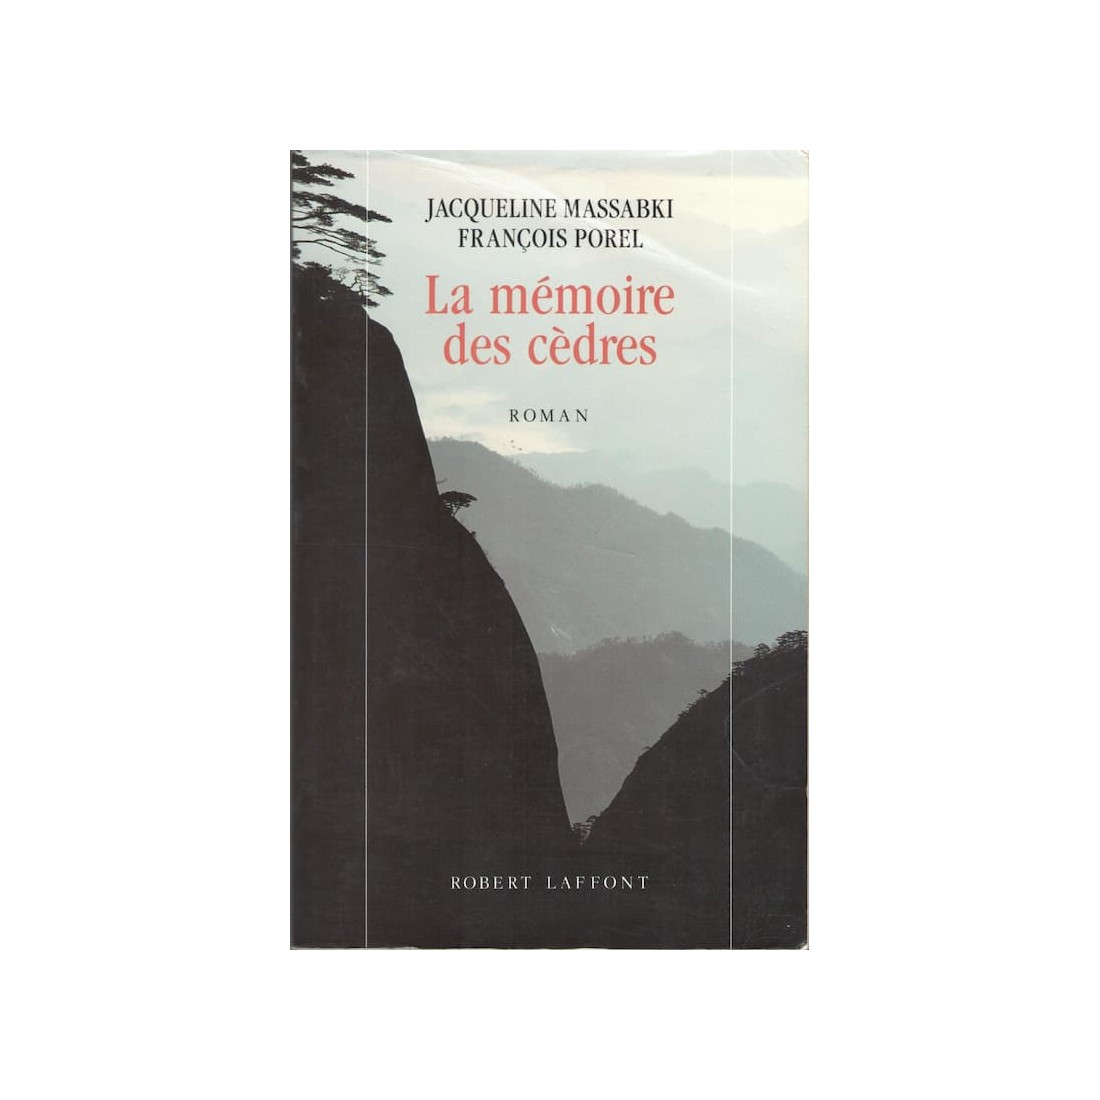 La mémoire des cèdres - 588 pages